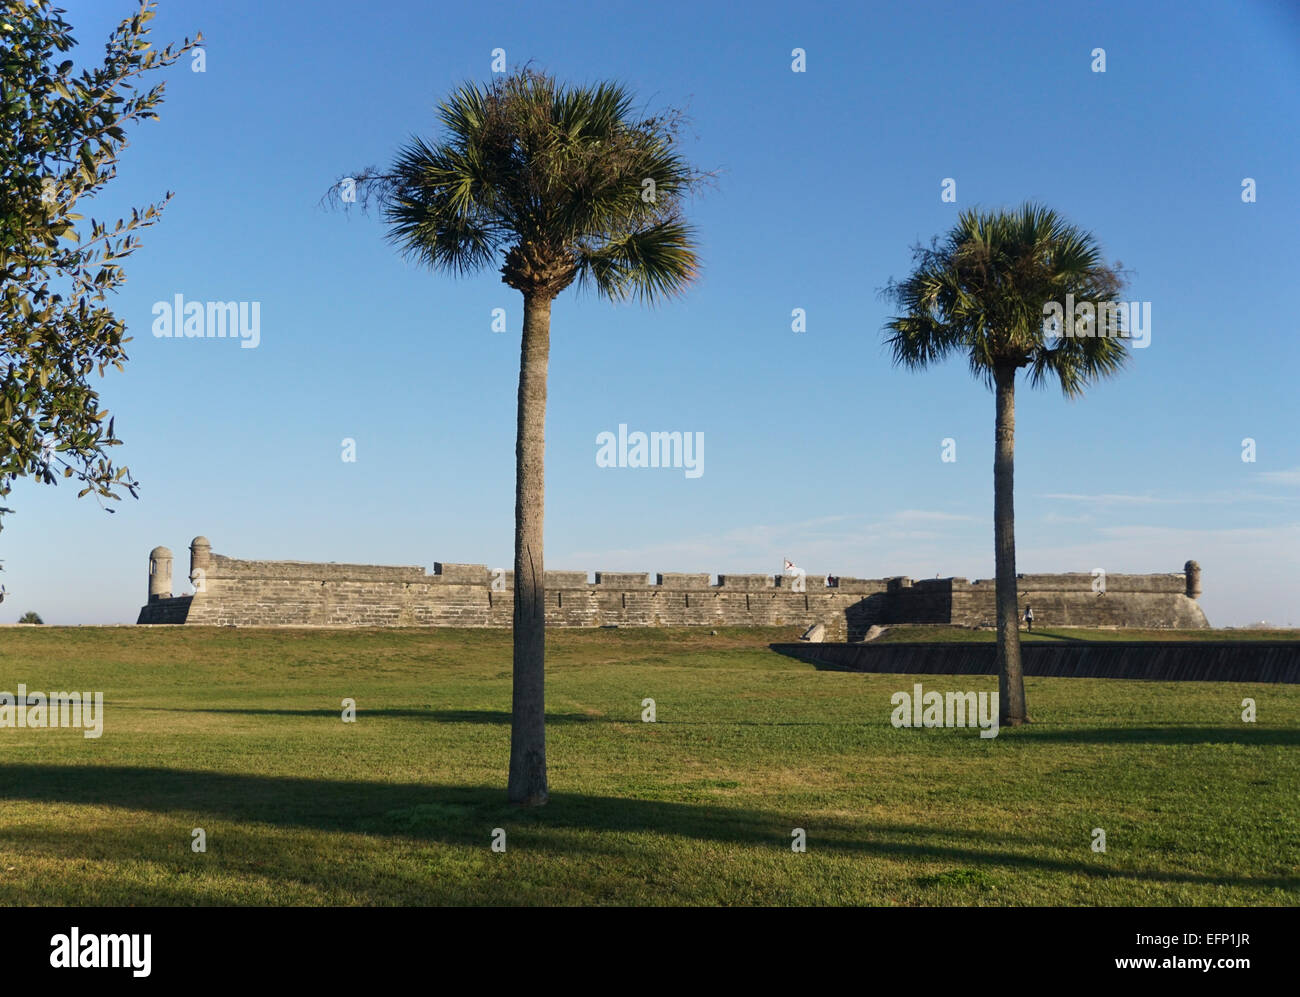 Castillo de San Marcos, spanische Festung in St. Augustine, Florida, USA gebaut. Stockfoto